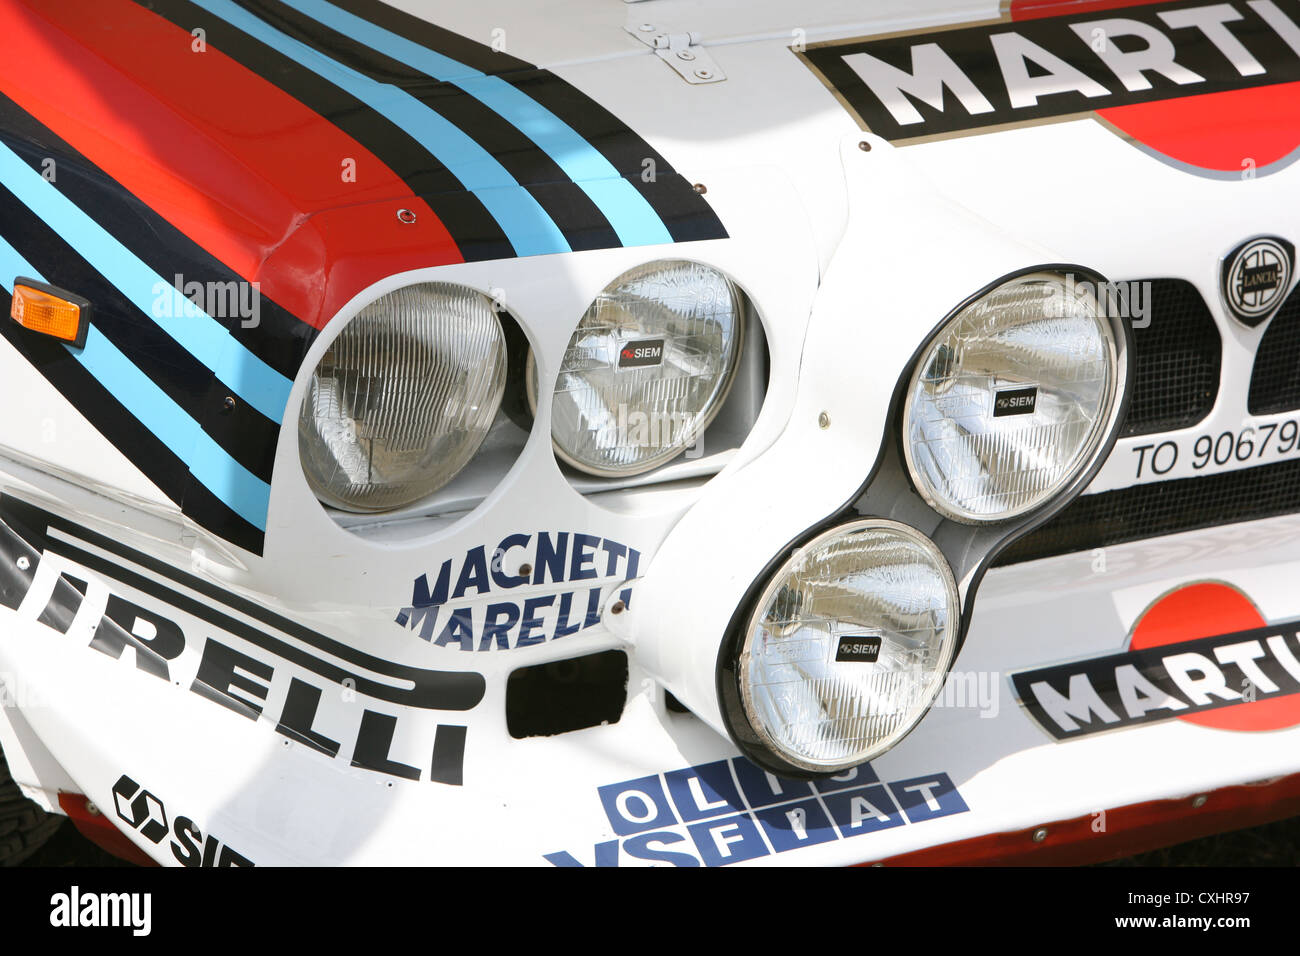 Lancia Rallye Stockfoto